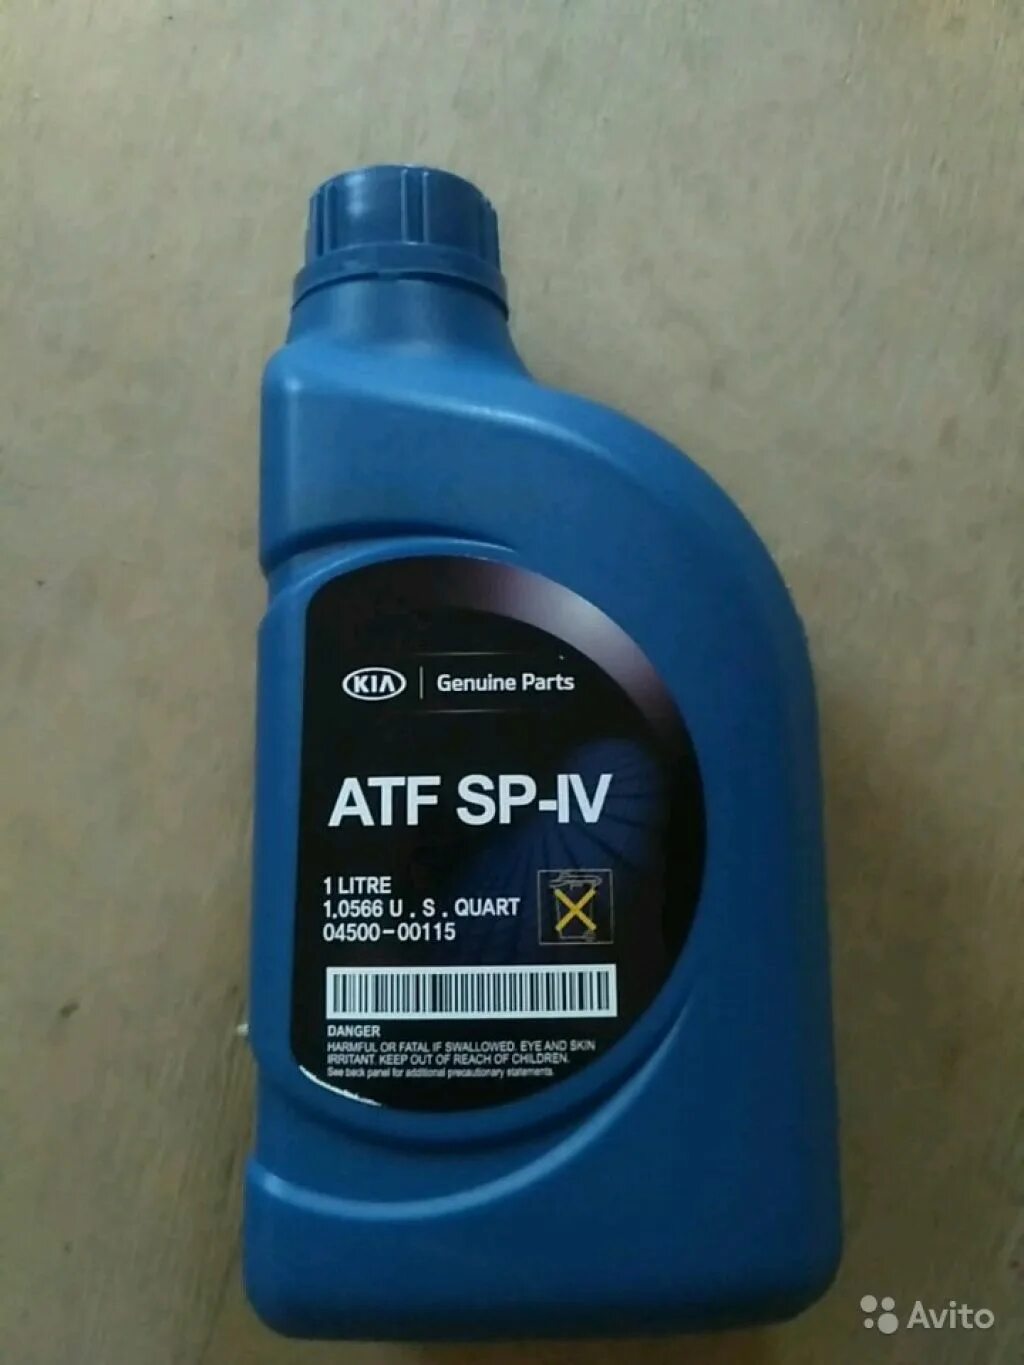 Atf sp4 артикул. ATF sp4 Kia. Kia ATF SP-IV. ATF SP 4 Kia 4 литра. ATF SP-IV M-1.